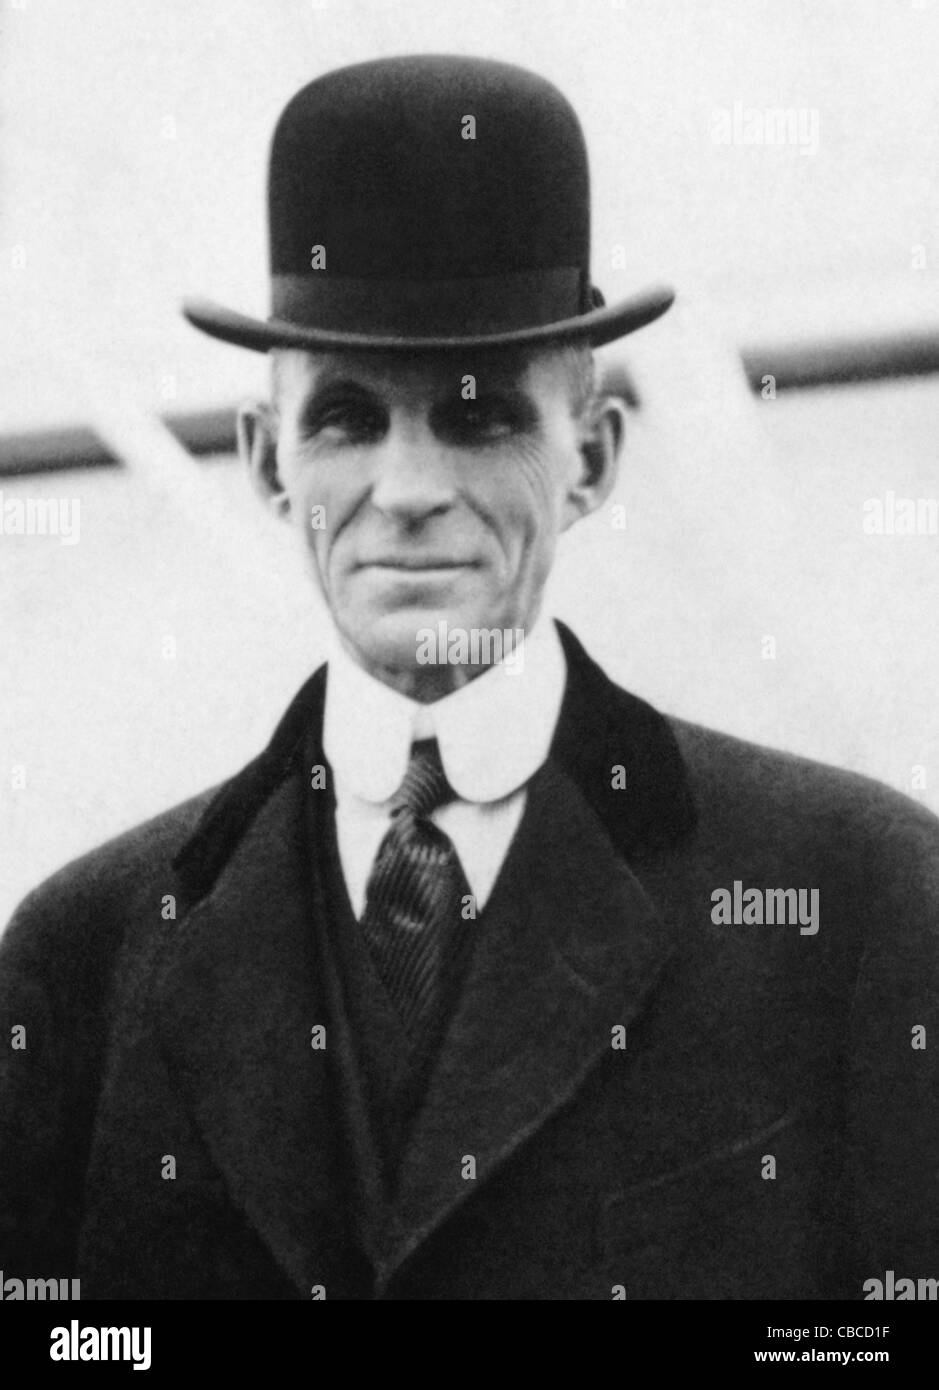 Vintage-Foto des amerikanischen Industriellen und Geschäftsmagnaten Henry Ford (1863 – 1947) – Gründer der Ford Motor Company. Foto von Bain Nachrichtendienst um 1916. Stockfoto